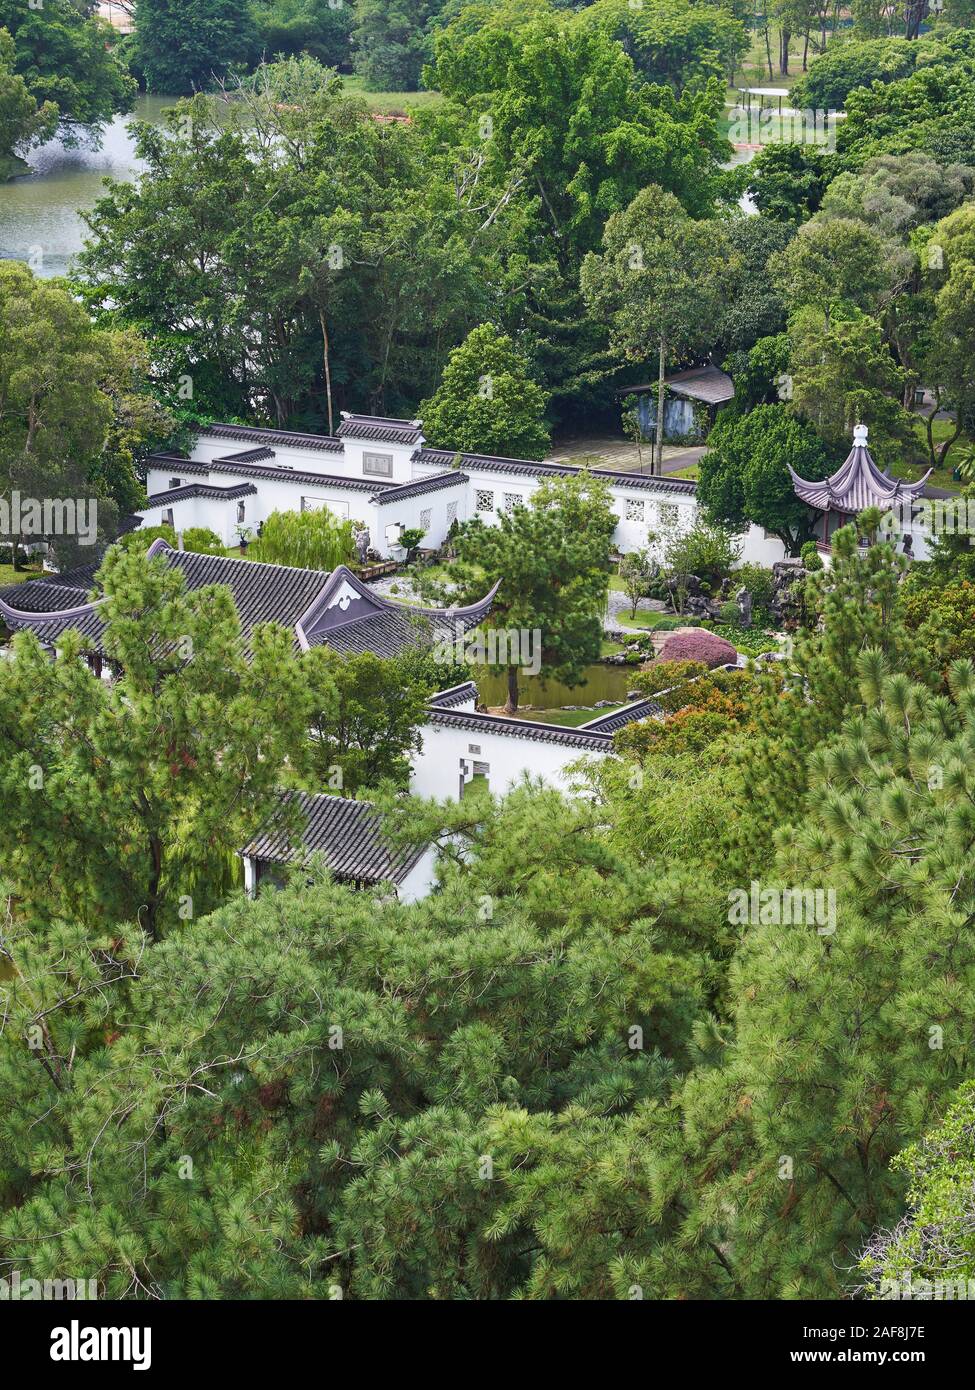 Vue aérienne de Bonsai garden à partir de la Pagode dans le jardin chinois, Singapour Banque D'Images